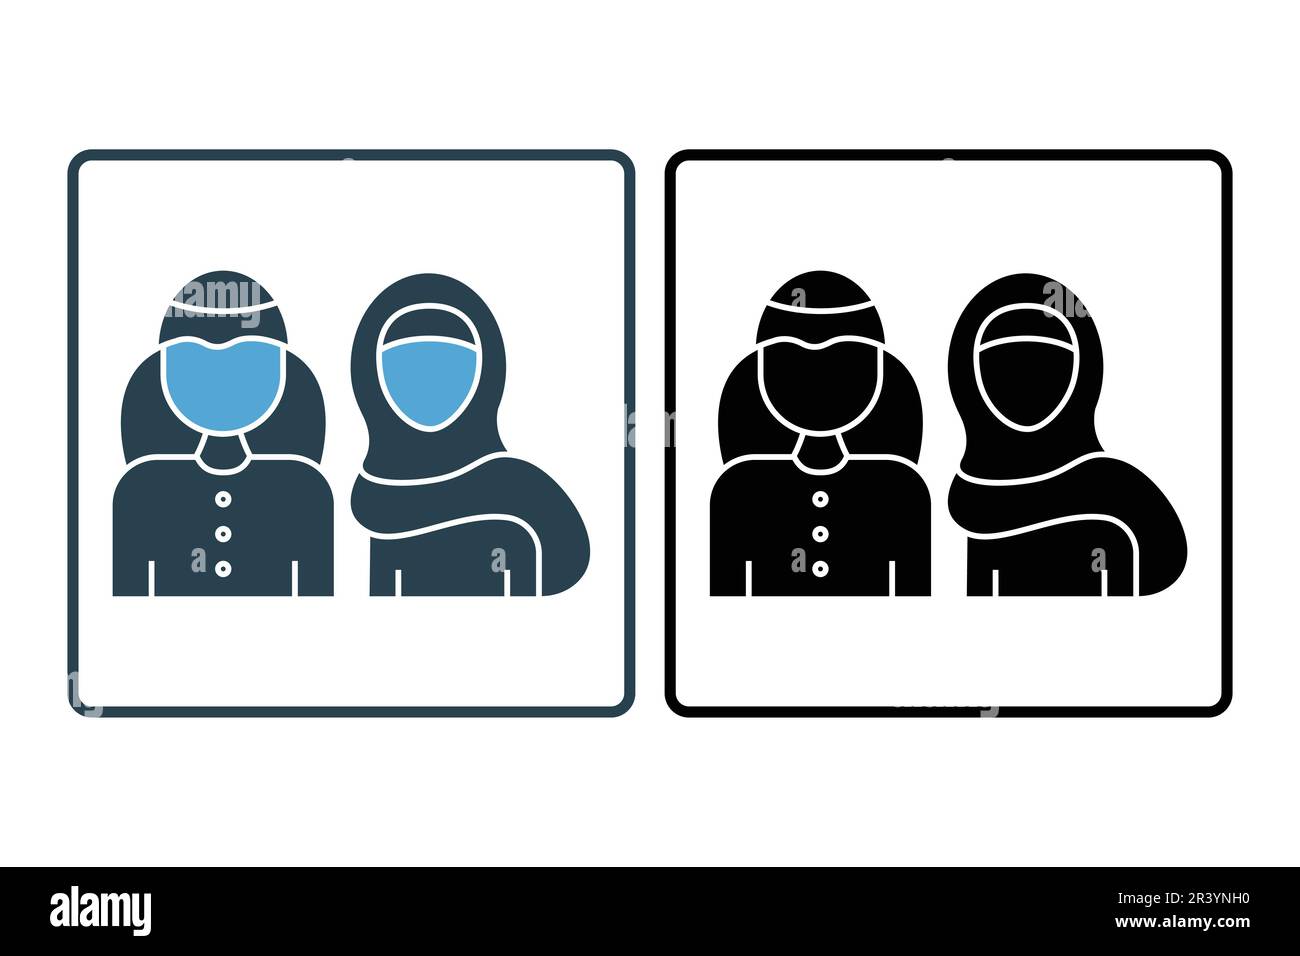 Popolo Saudita Icon.Man e Donna in tradizionale sciarpa musulmana shemakh capo. Design a icone solido. Semplice disegno vettoriale modificabile Illustrazione Vettoriale